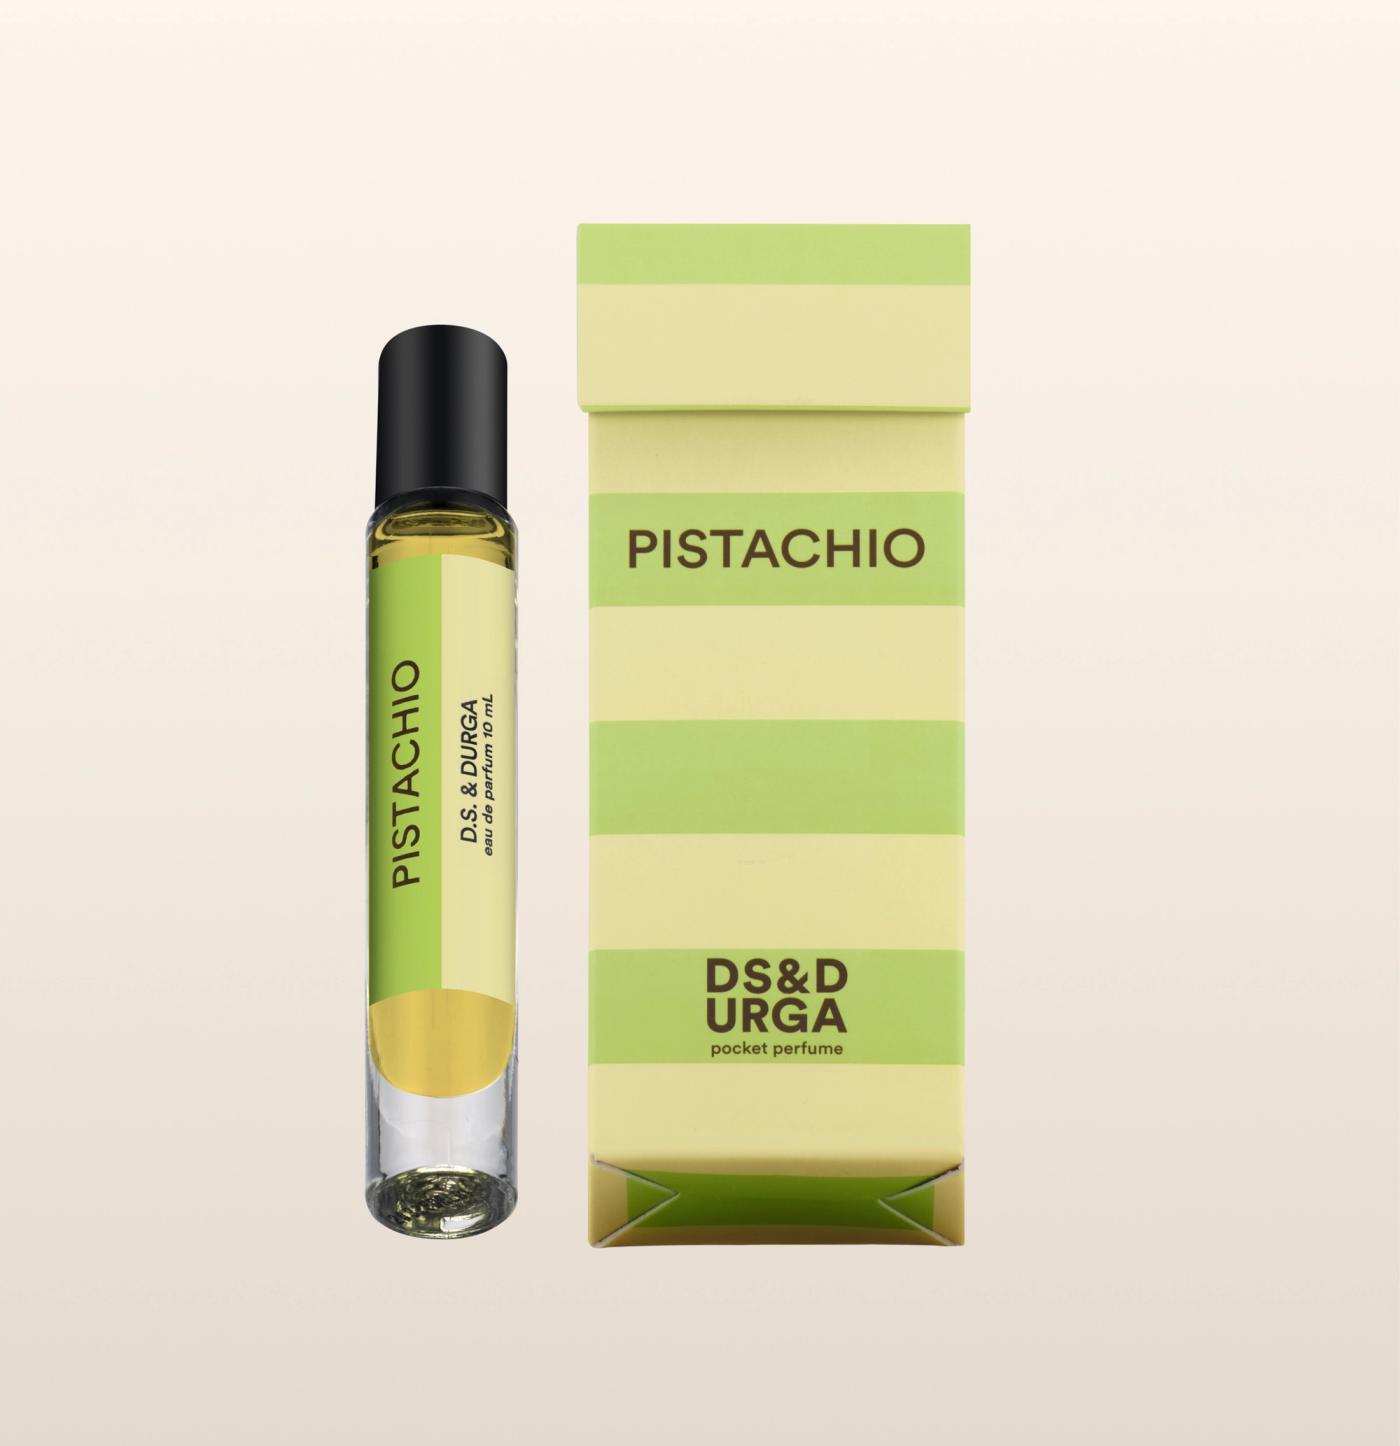 Pistachio Pocket Perfume by D.S. & Durga